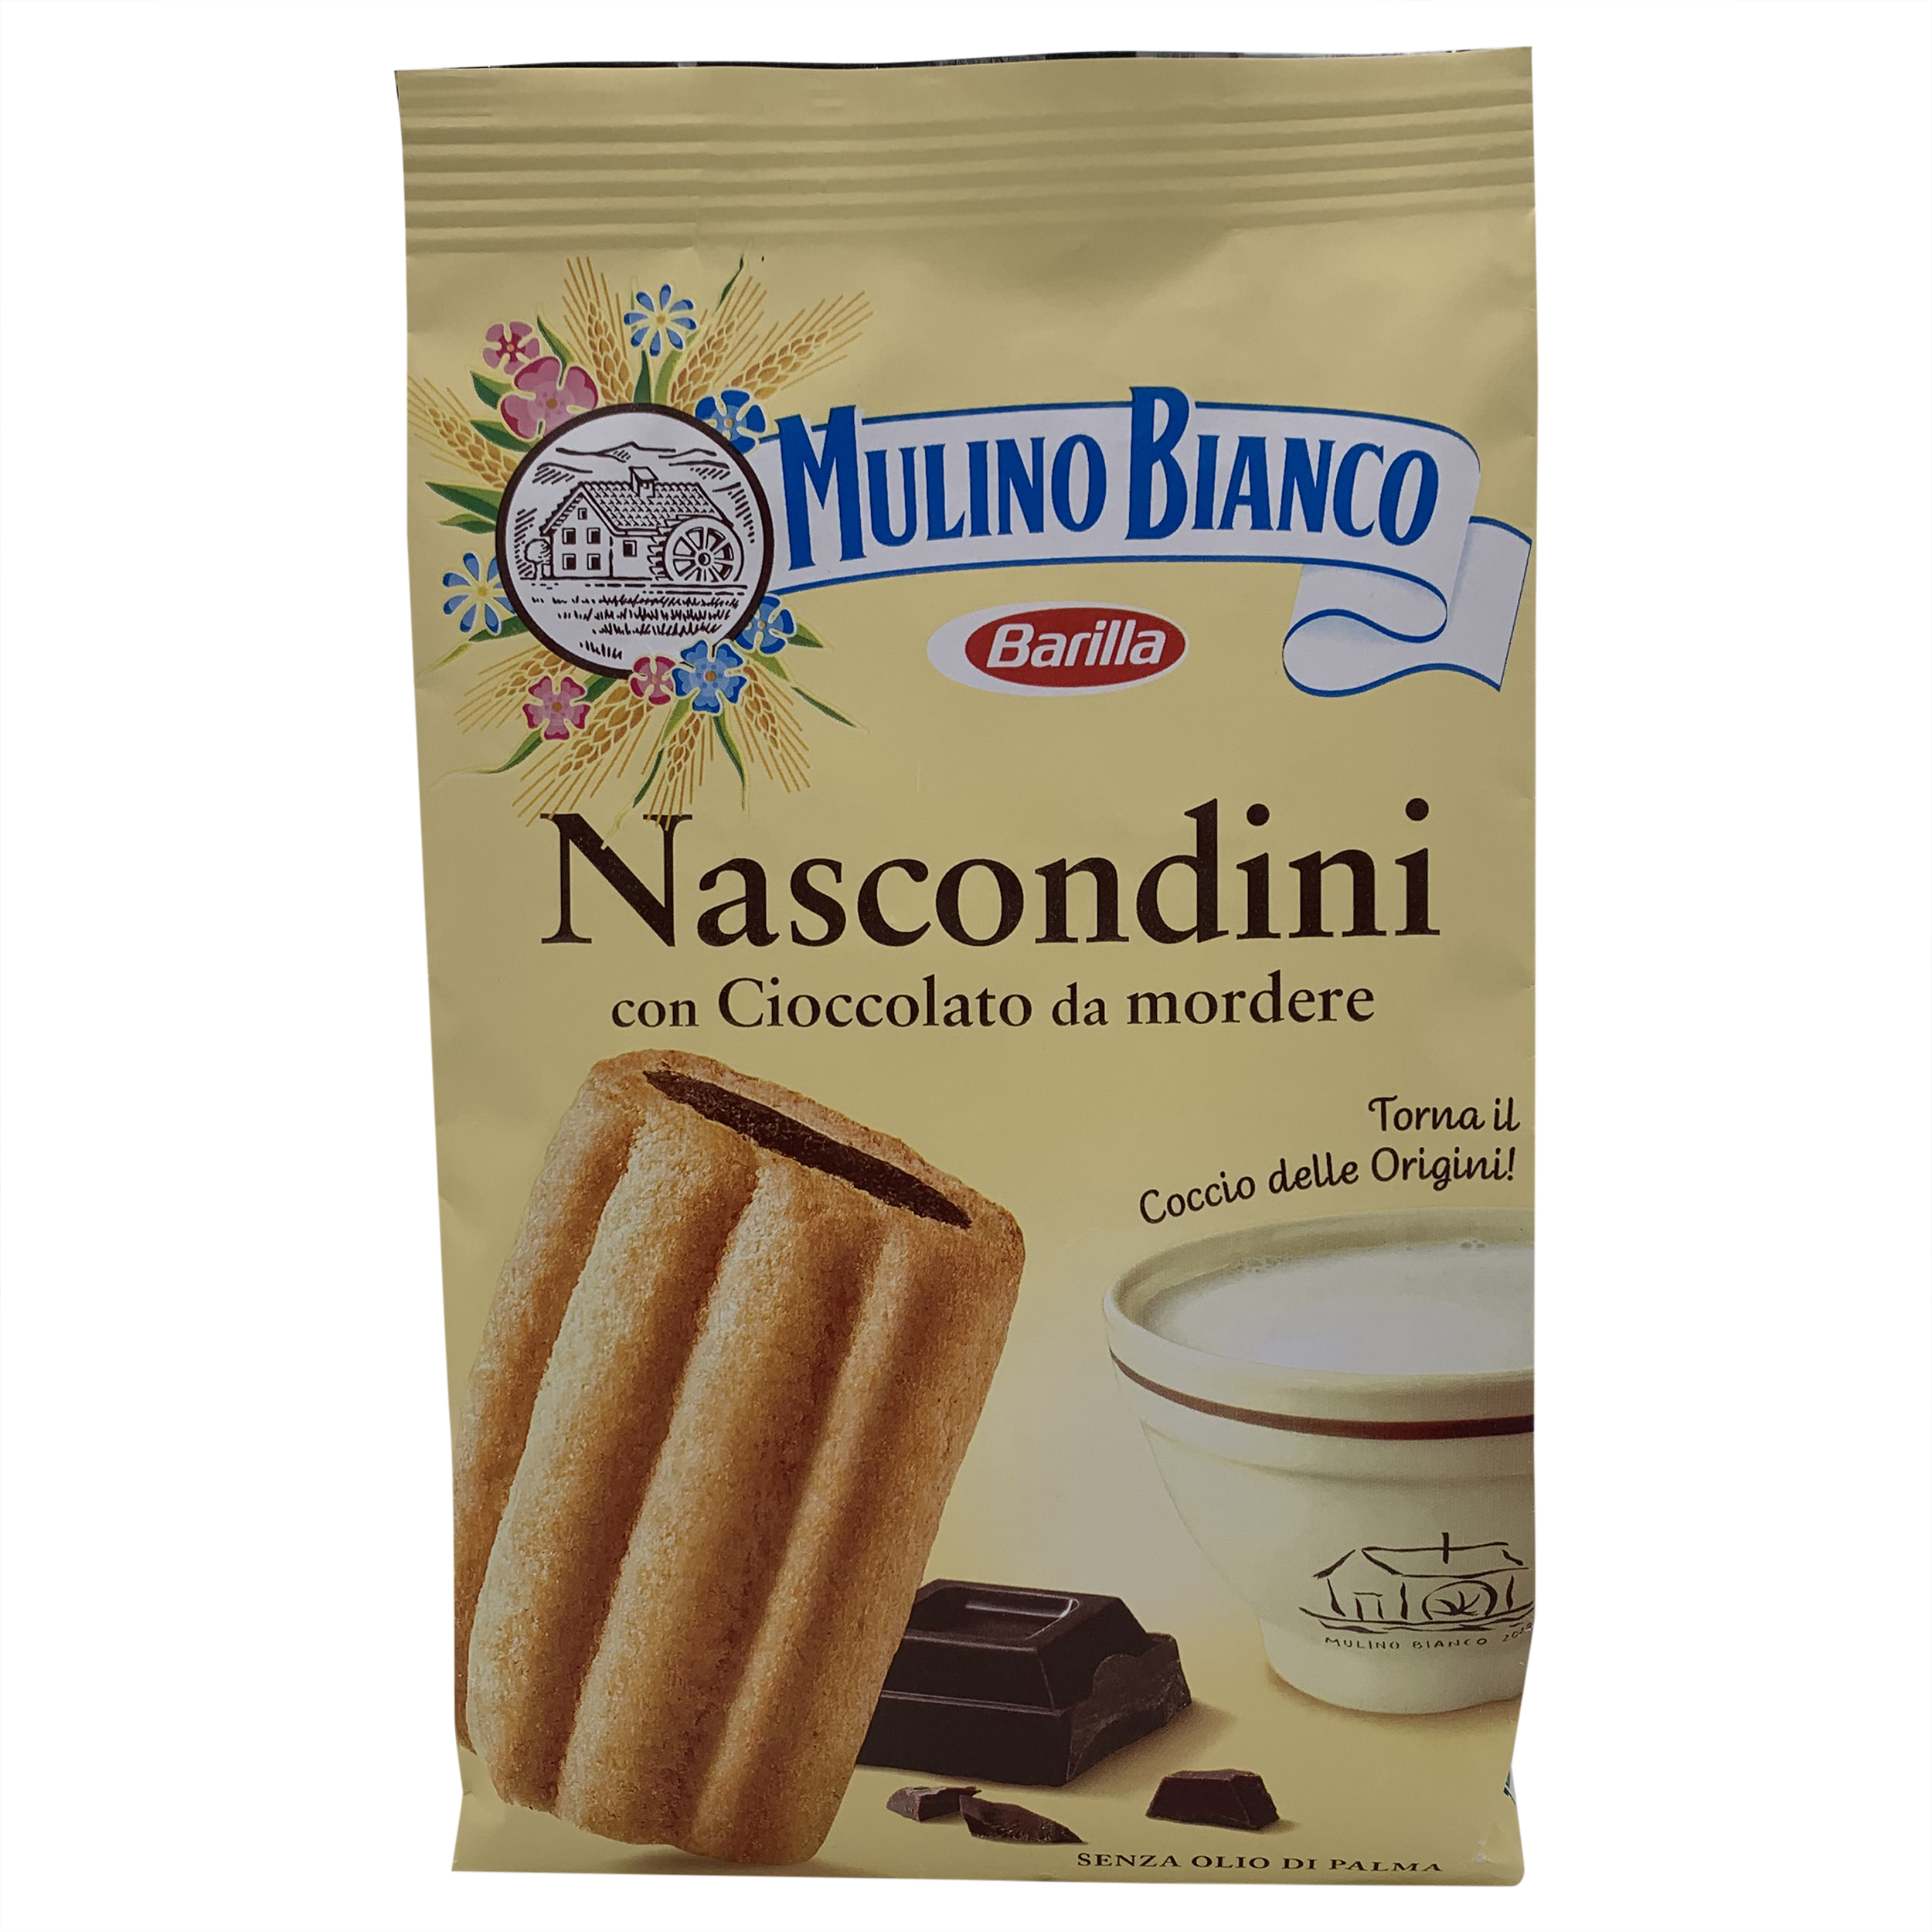 Mulino Bianco | Italian Biscuits | Mulino Bianco, Nascondini -330g ...